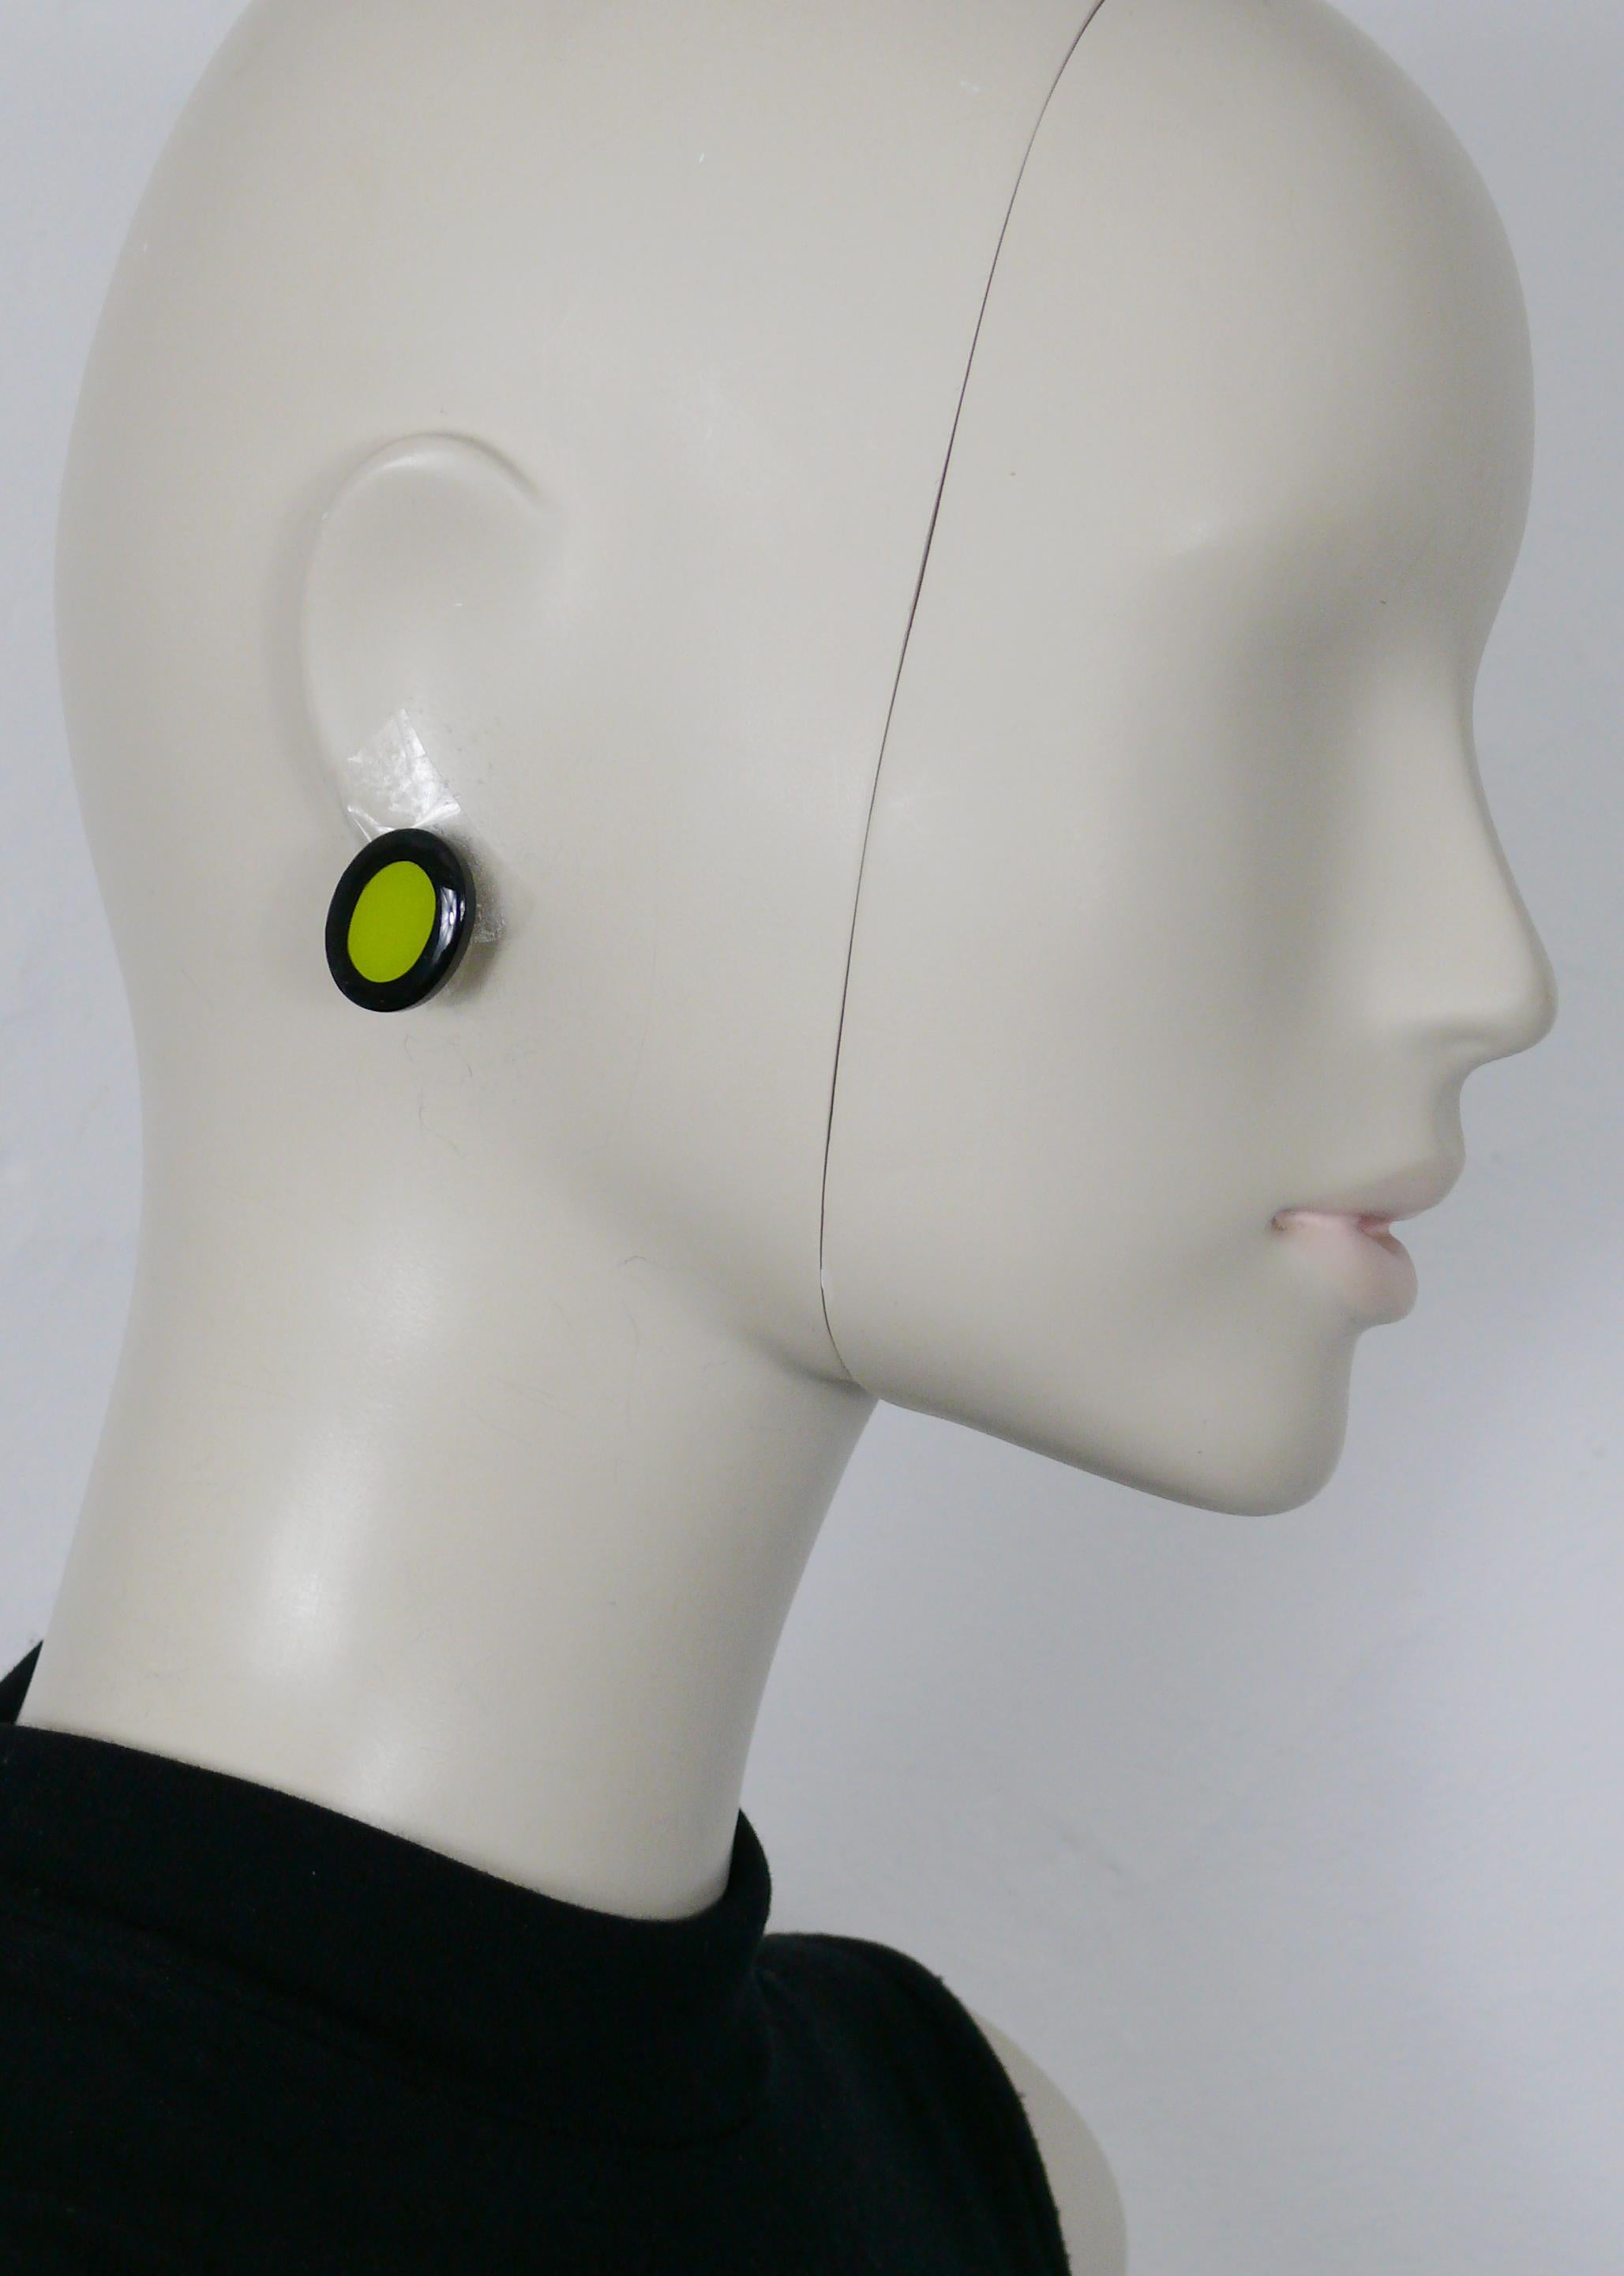 YVES SAINT LAURENT Vintage-Ohrringe in abstrakter Form mit einem Oval aus schwarzem und grünem Harz.

Geprägtes YSL.

Ungefähre Maße: Höhe ca. 2,2 cm (0,87 inch) / Breite ca. 1,8 cm (0,71 inch).

ANMERKUNGEN
- Es handelt sich um einen gebrauchten